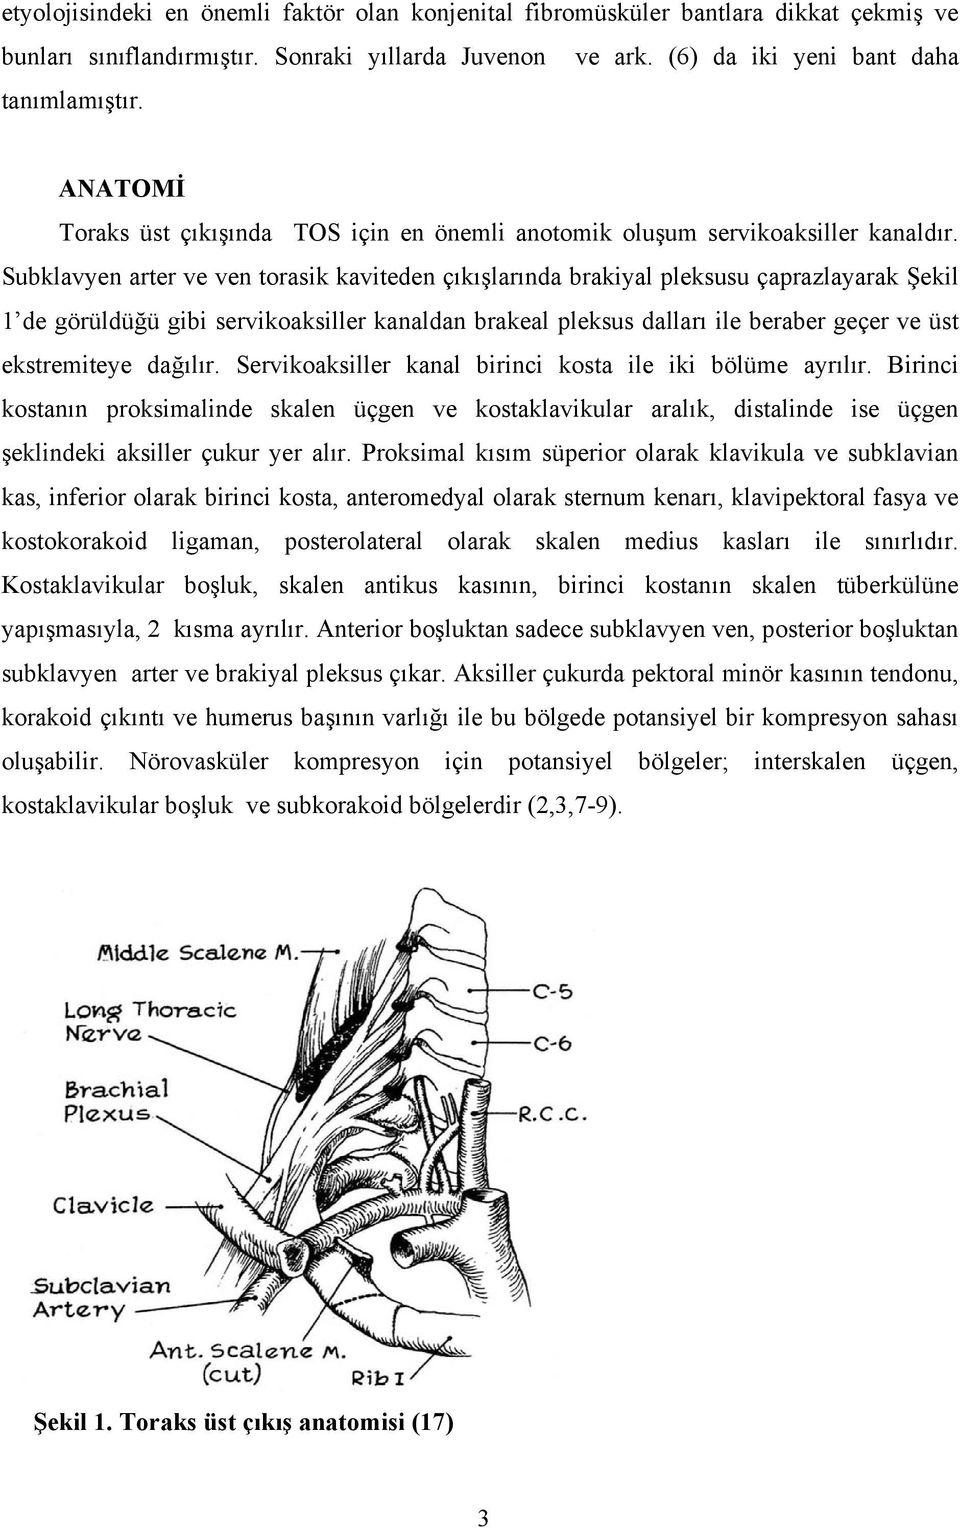 Subklavyen arter ve ven torasik kaviteden çıkışlarında brakiyal pleksusu çaprazlayarak Şekil 1 de görüldüğü gibi servikoaksiller kanaldan brakeal pleksus dalları ile beraber geçer ve üst ekstremiteye